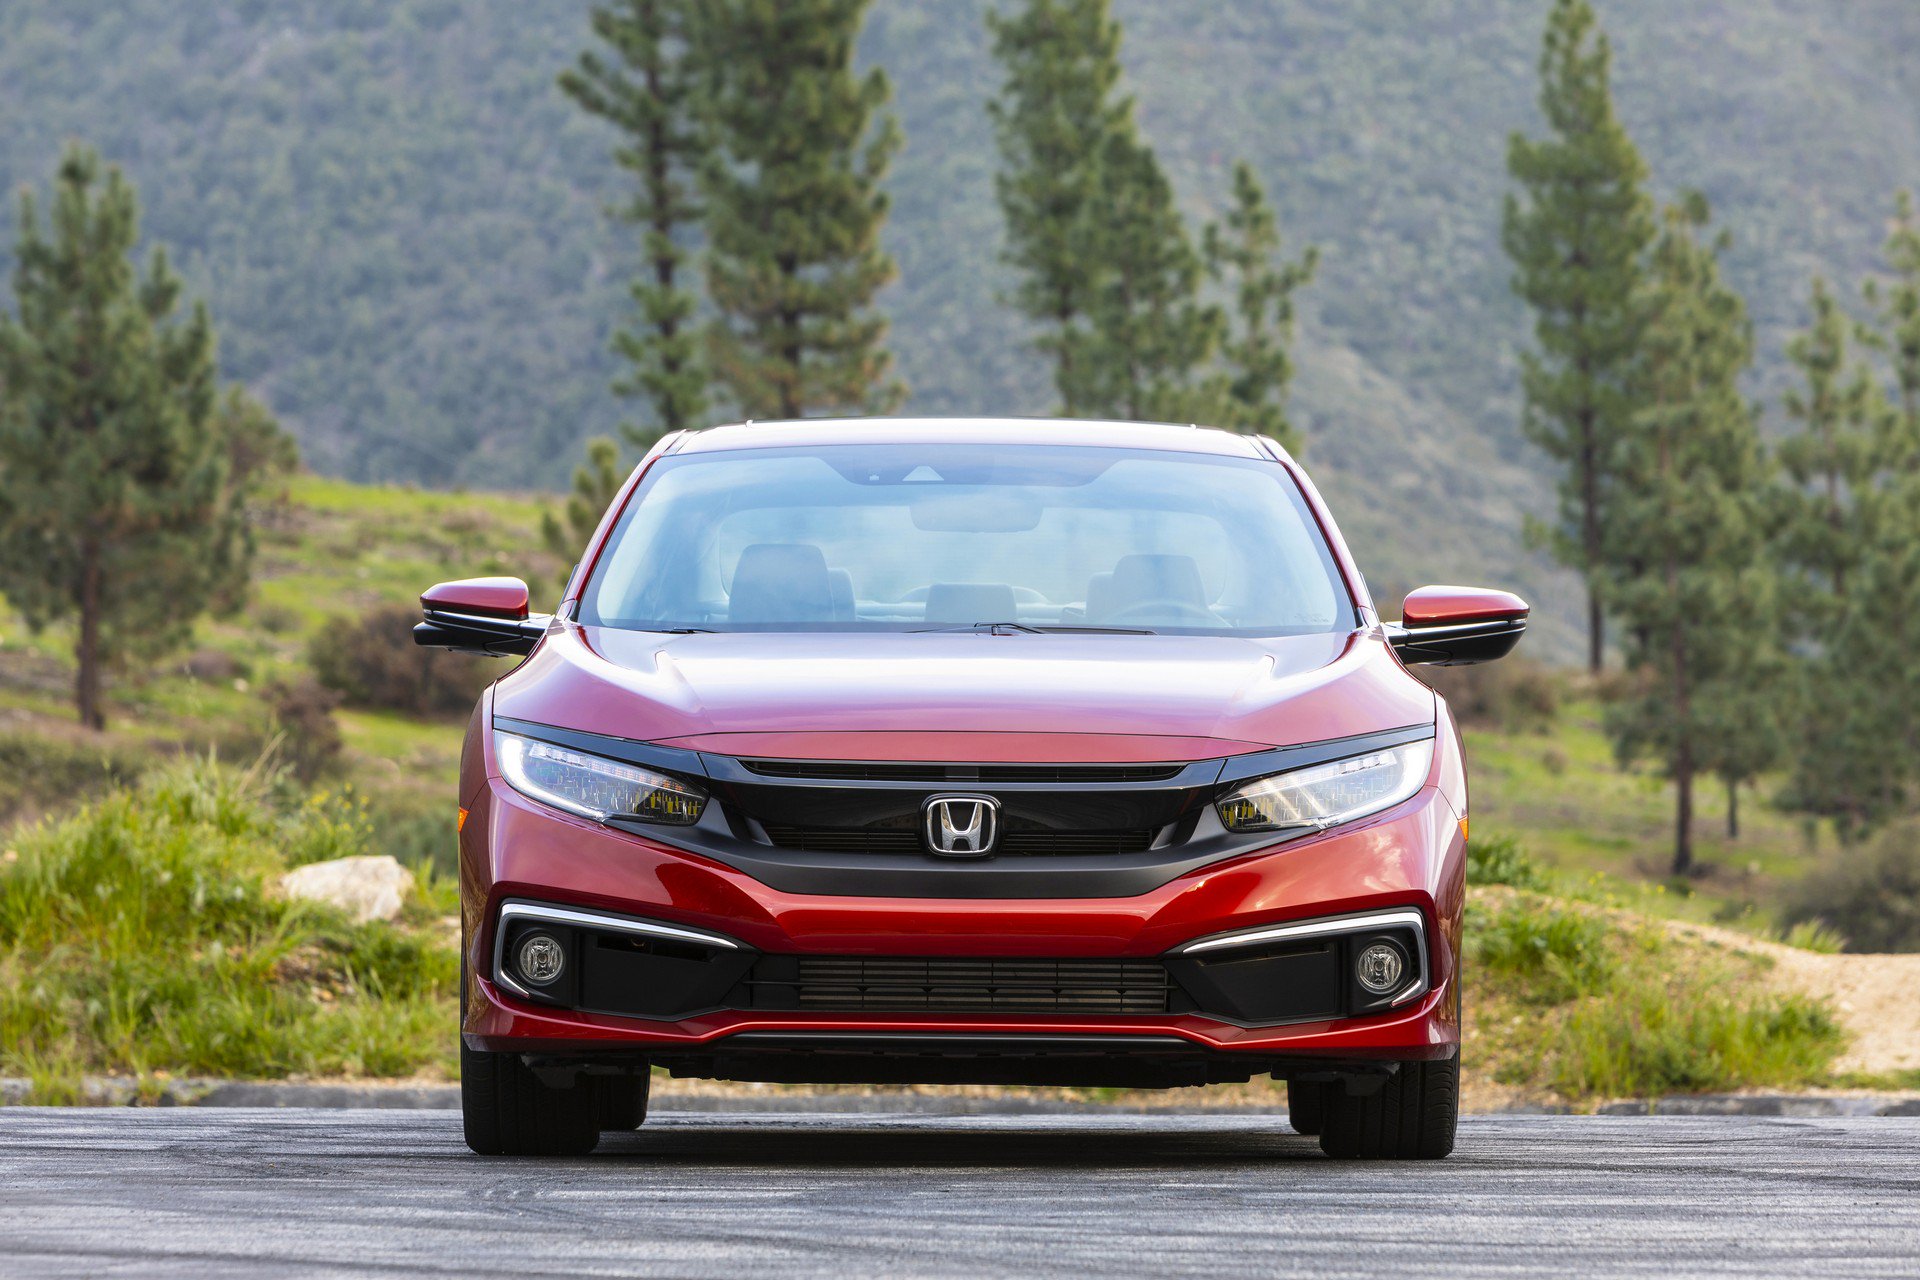 Bảng giá xe Honda Civic tháng 3/2020 mới nhất